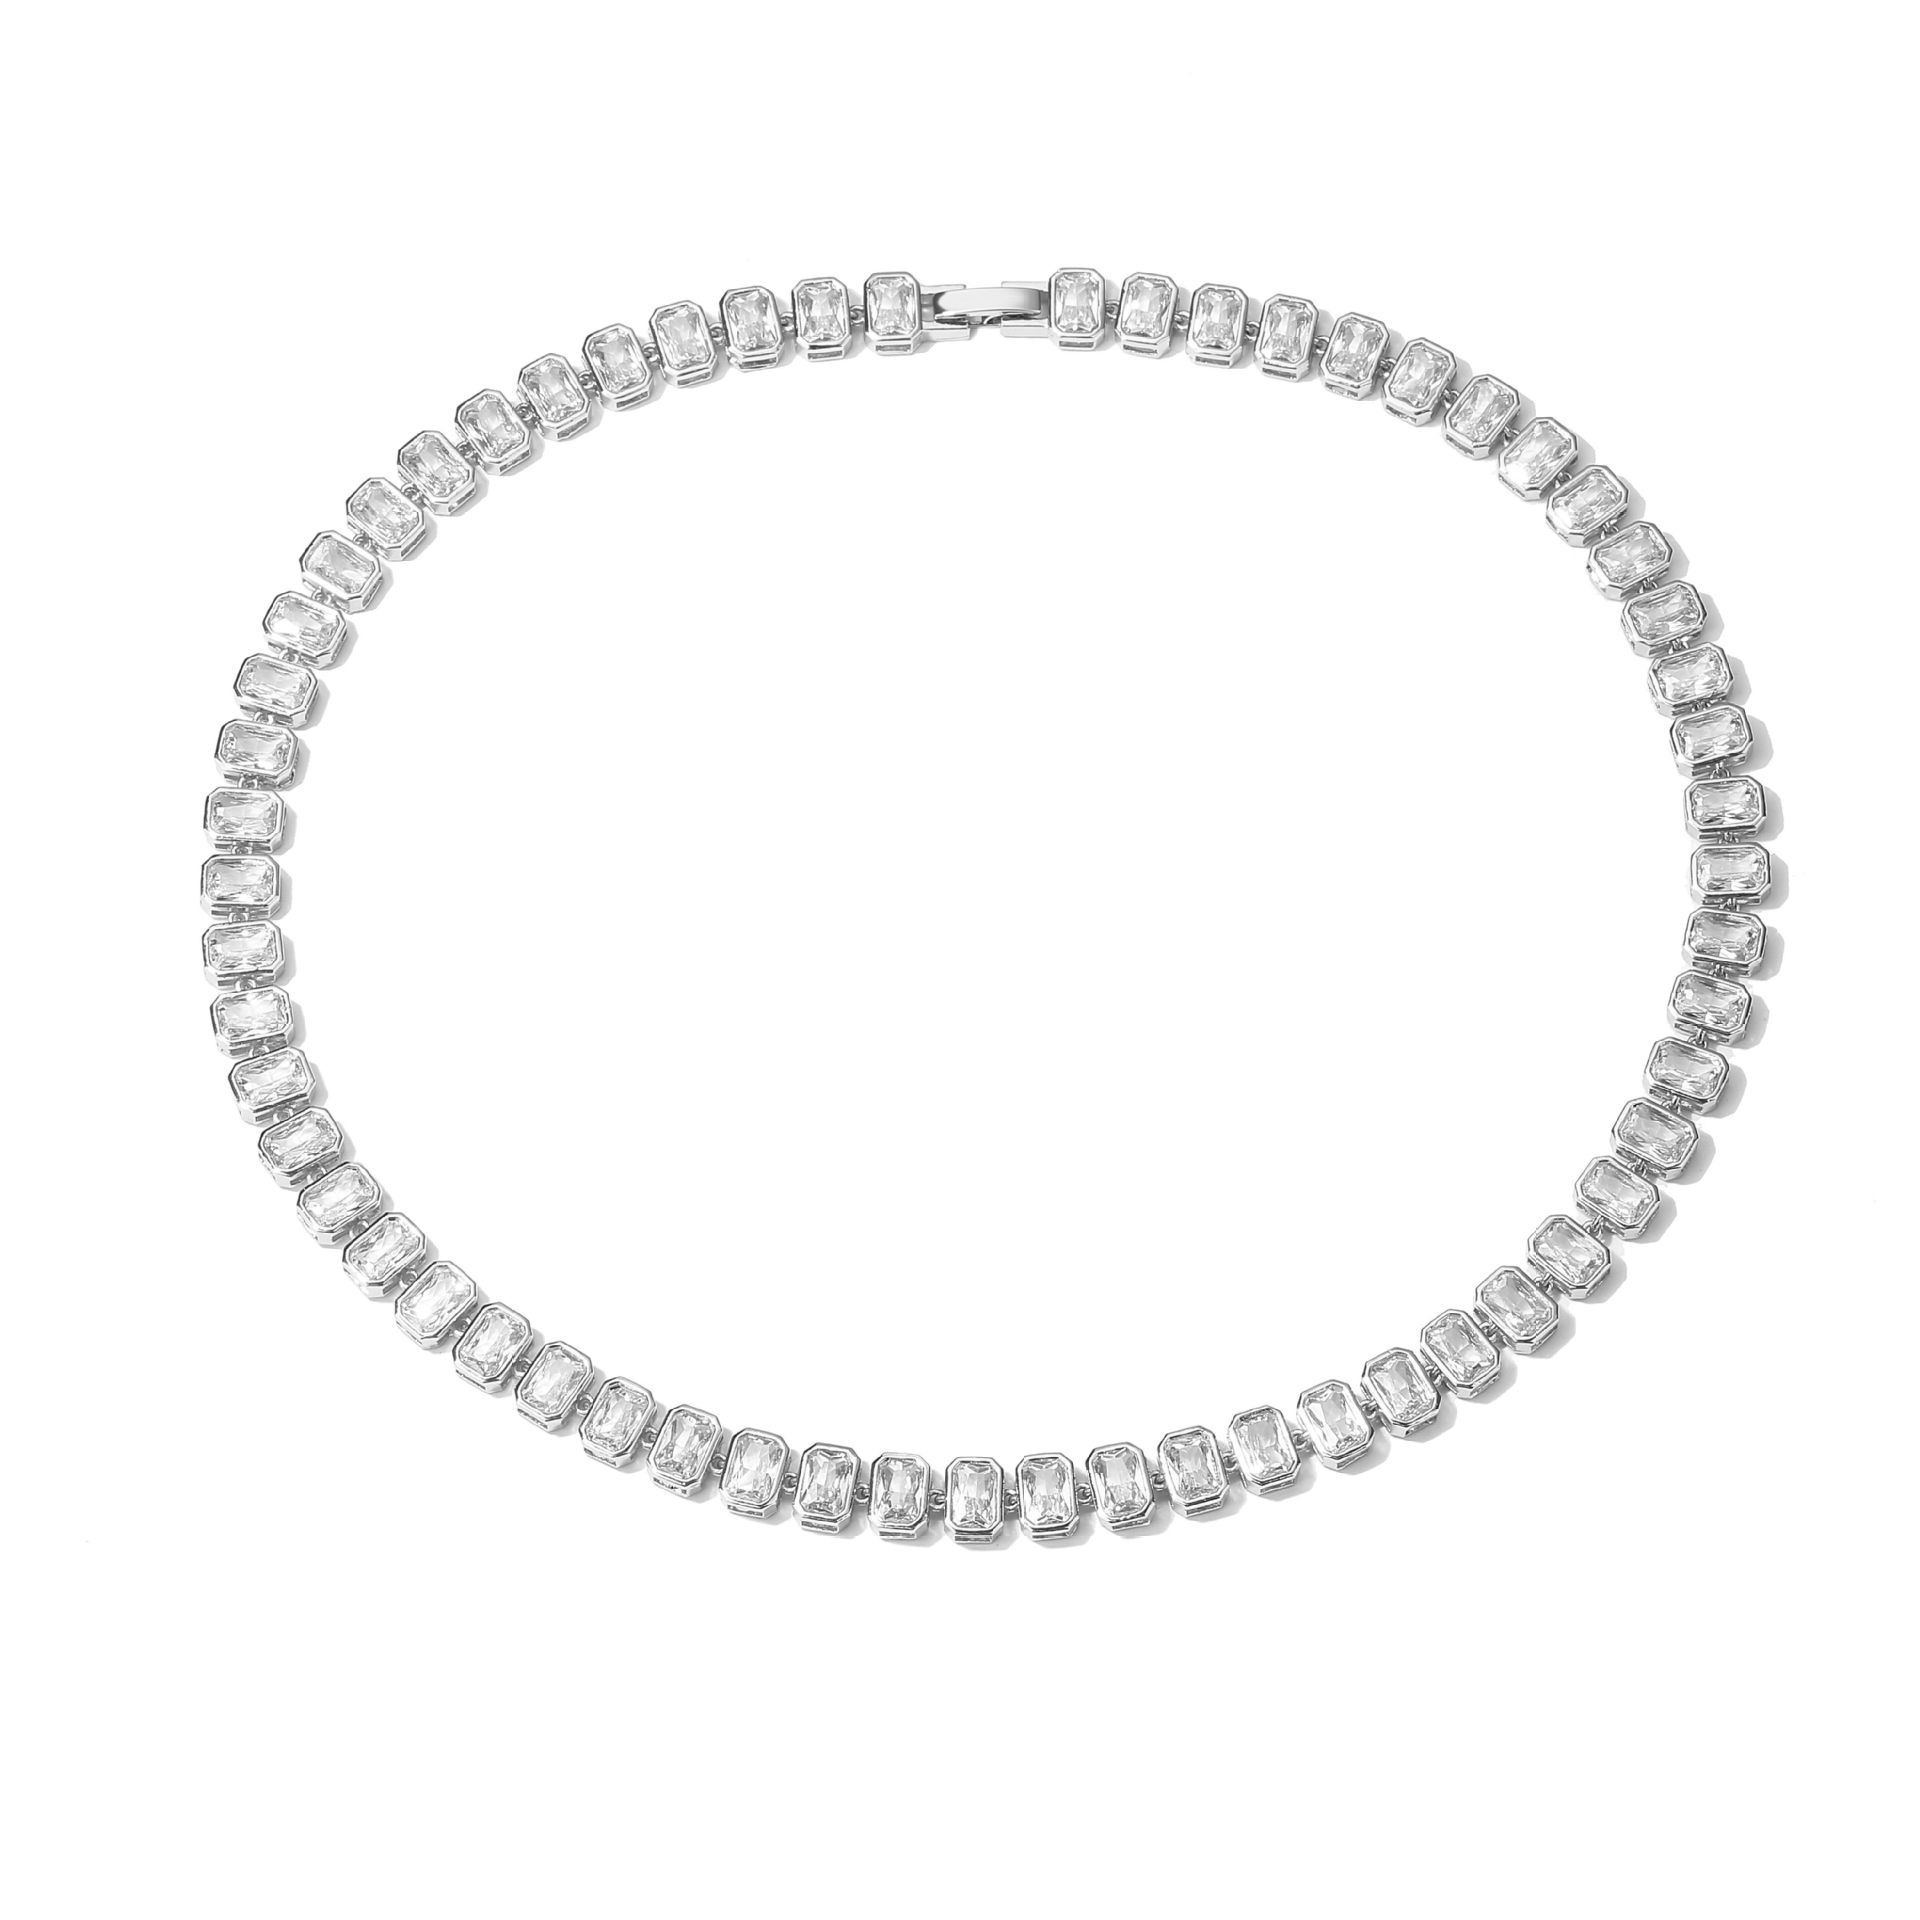 4:Platinum necklace